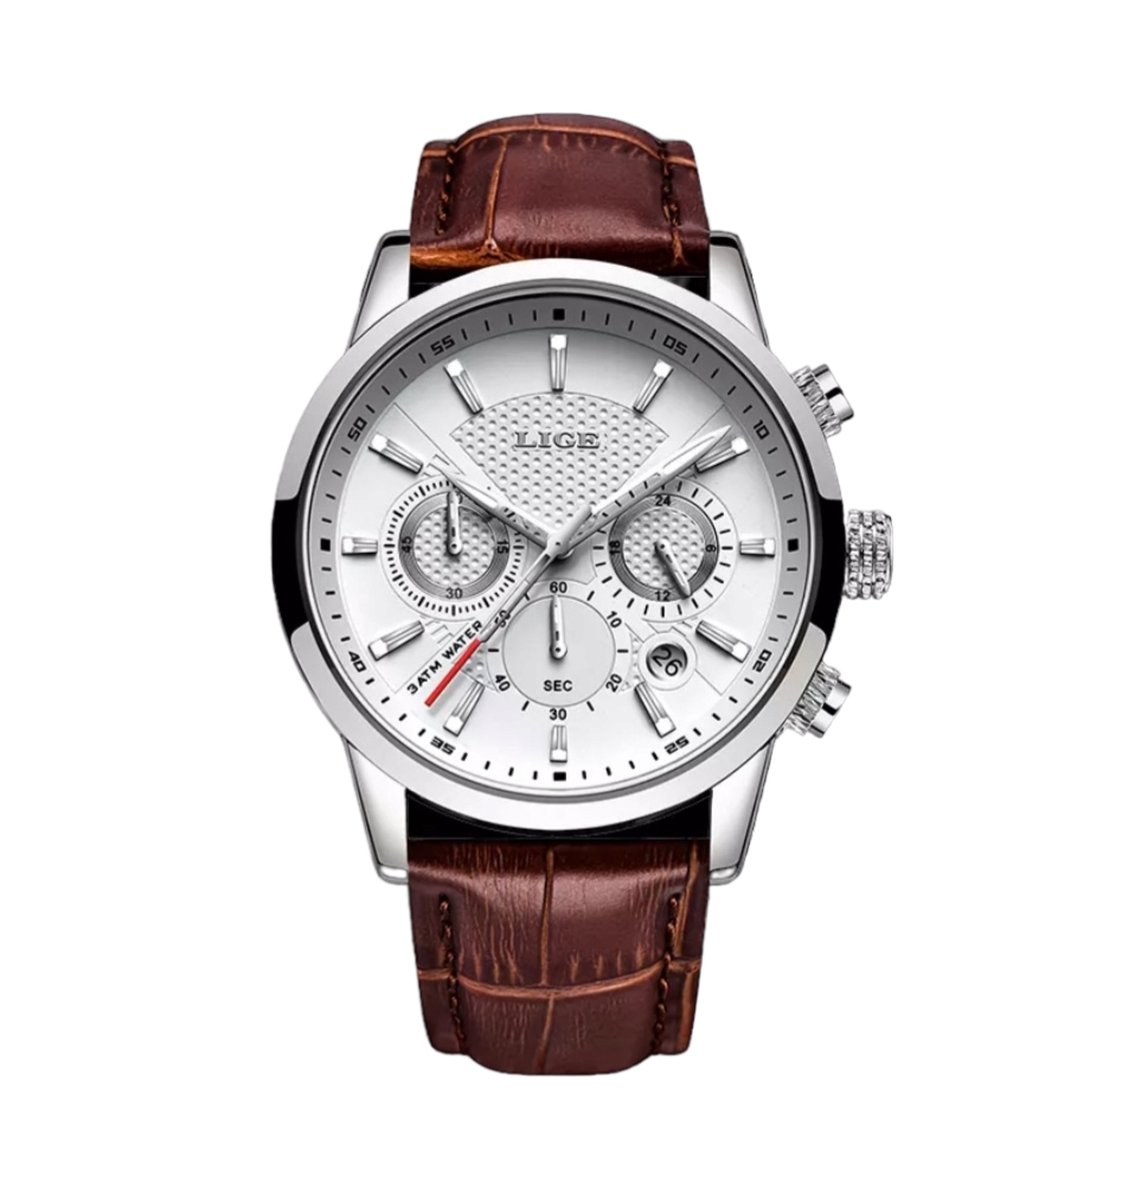 Horloge- Heren- Dames -Unisex- Lux- Top- Merk- Leder- Chronograaf -Waterdichte -Sport - Business - Casual - Fashion -Datum- Insta- Quartz- Horloge- Voor Women- Men- Watch- TikTOK- Leather- belt